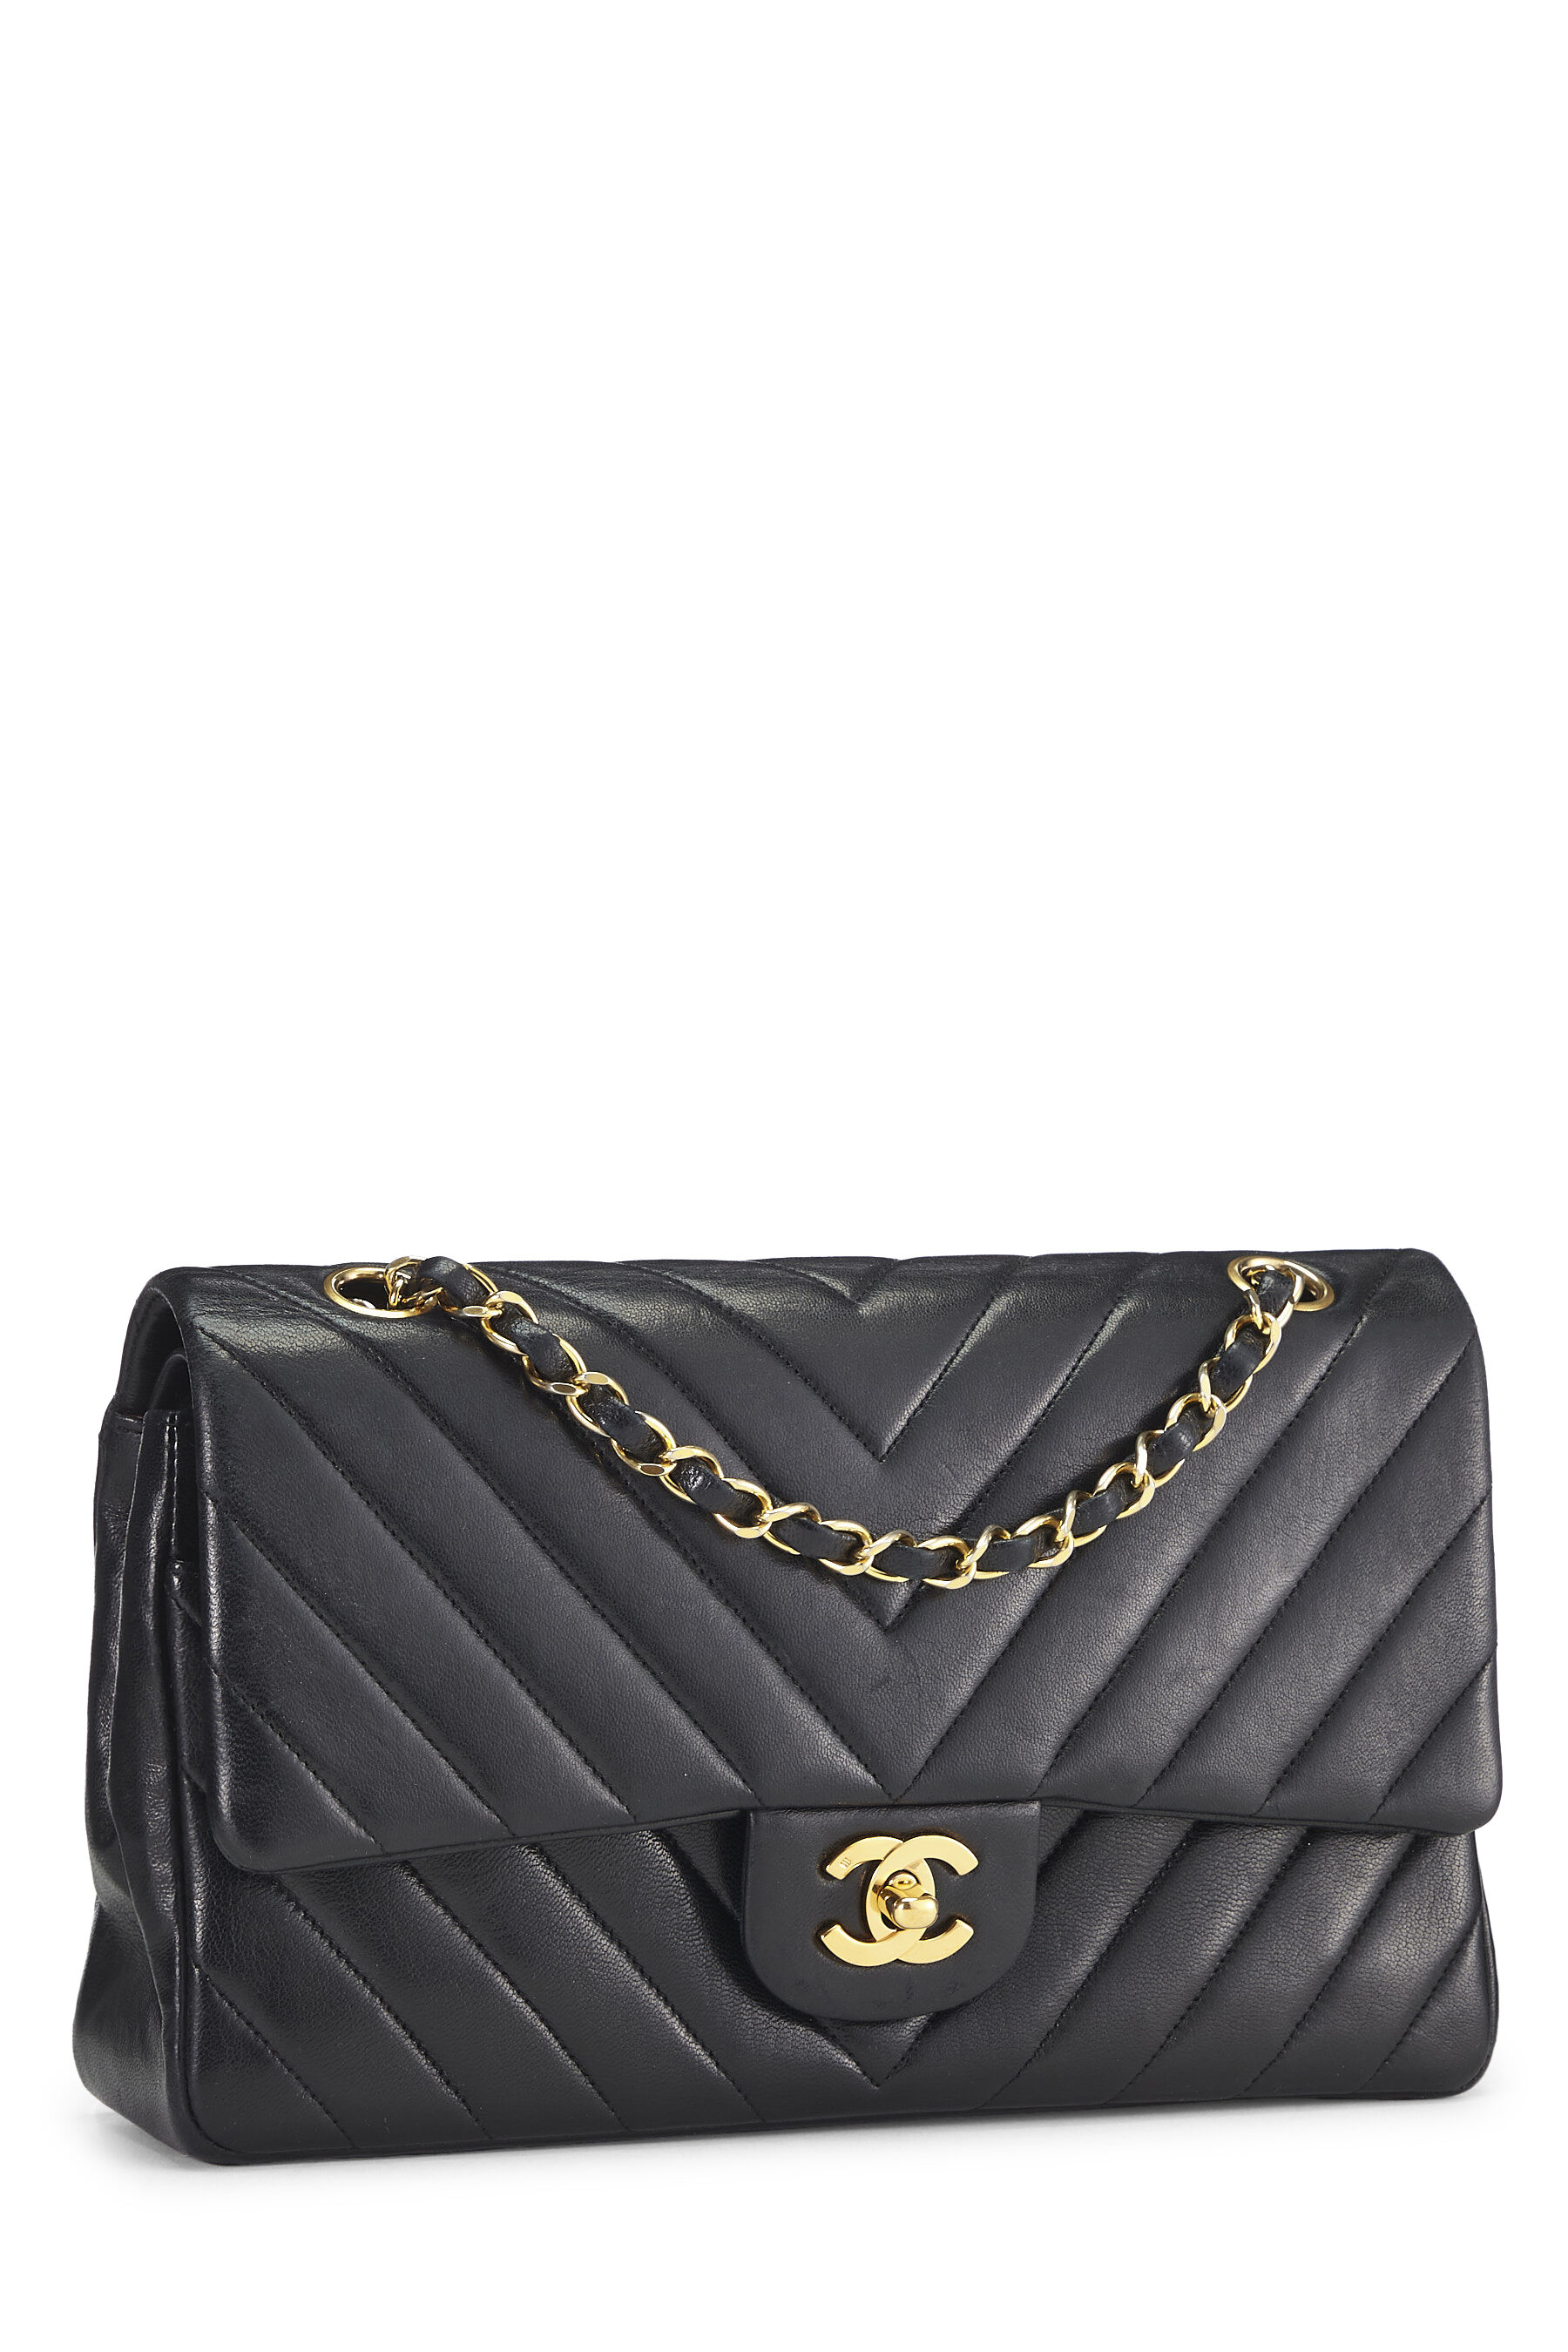 Chanel Tennis Bag - Black - CHA16896